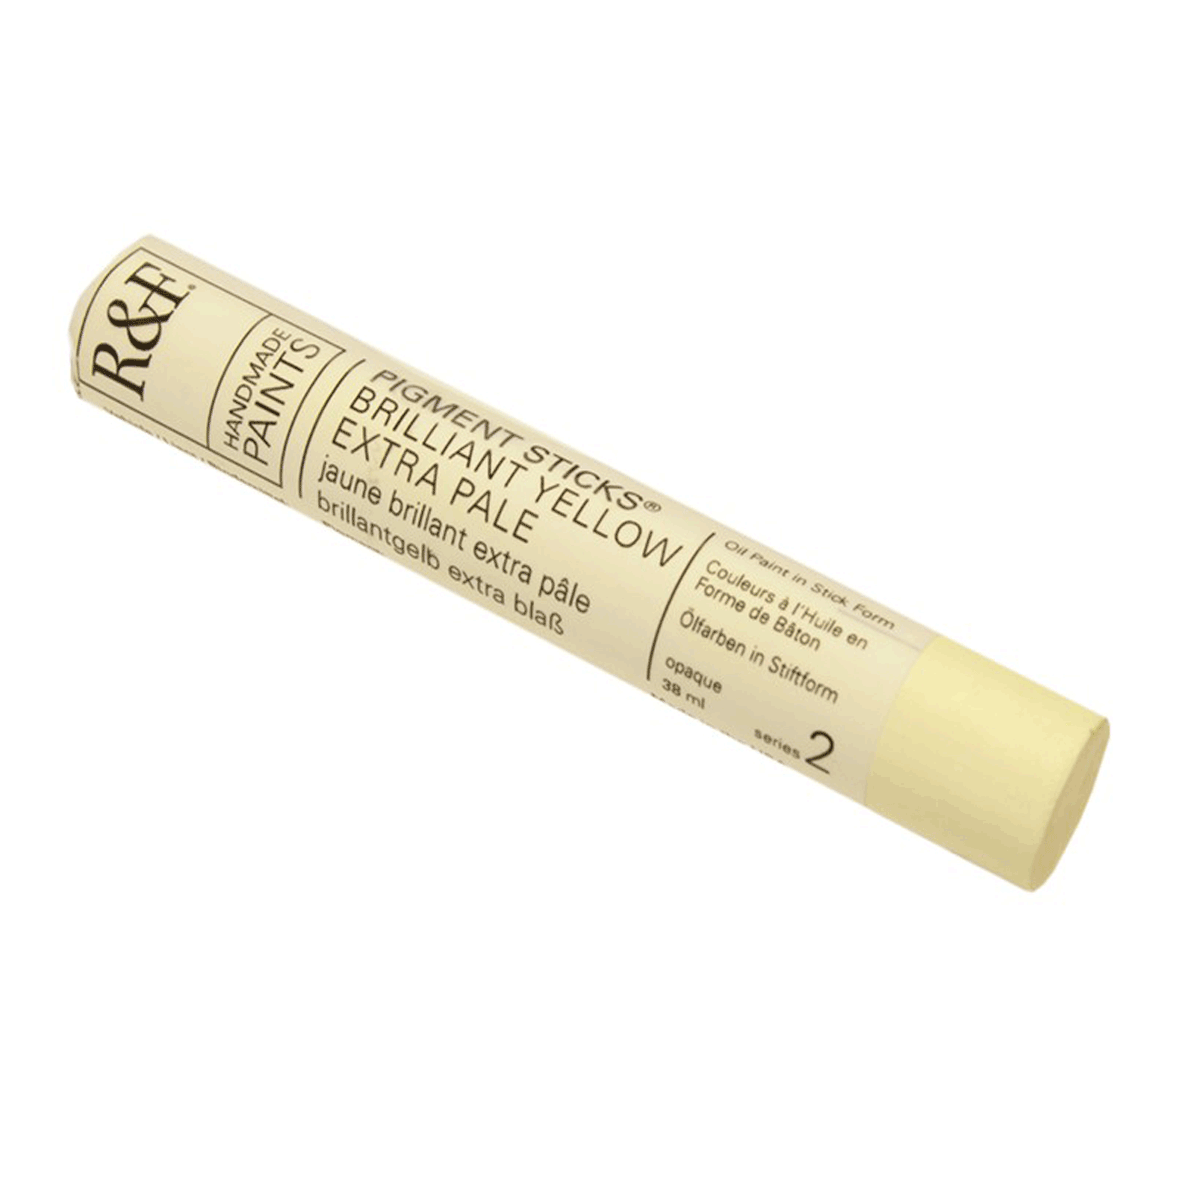 R&F Oil Pigment Stick, Brilliant Yellow Extra Pale 38ml